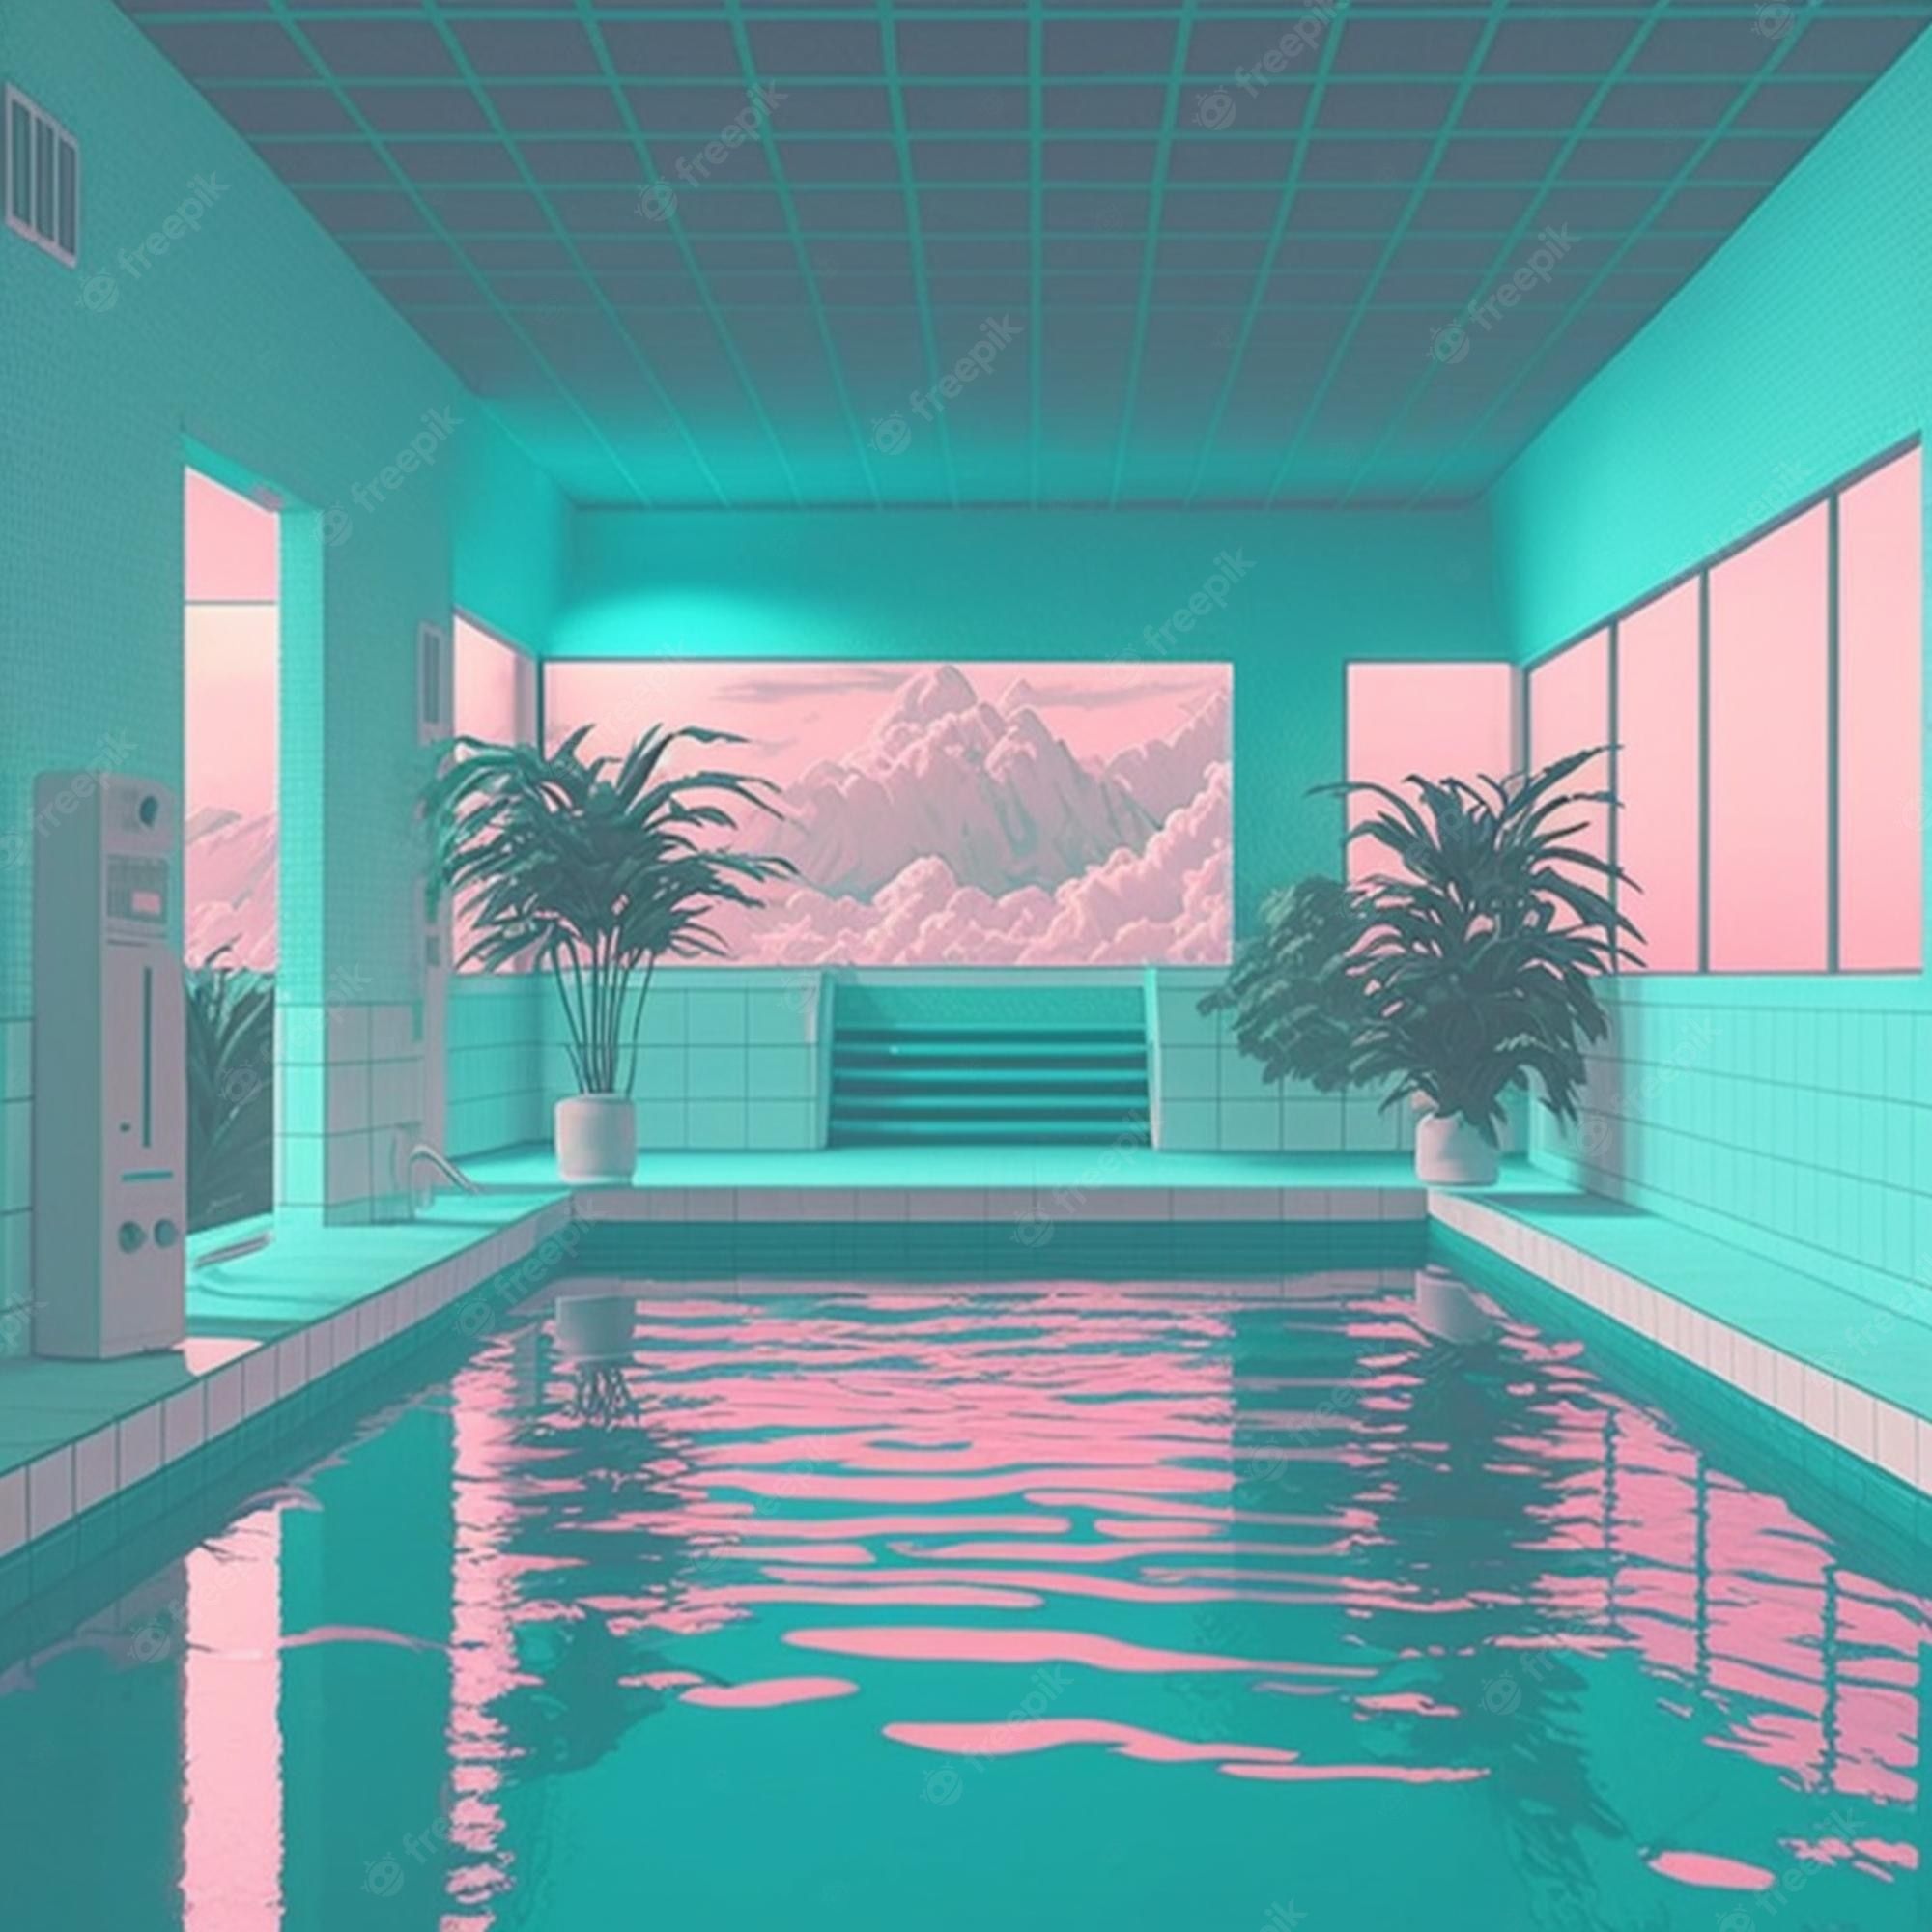 Pool Aesthetic Image